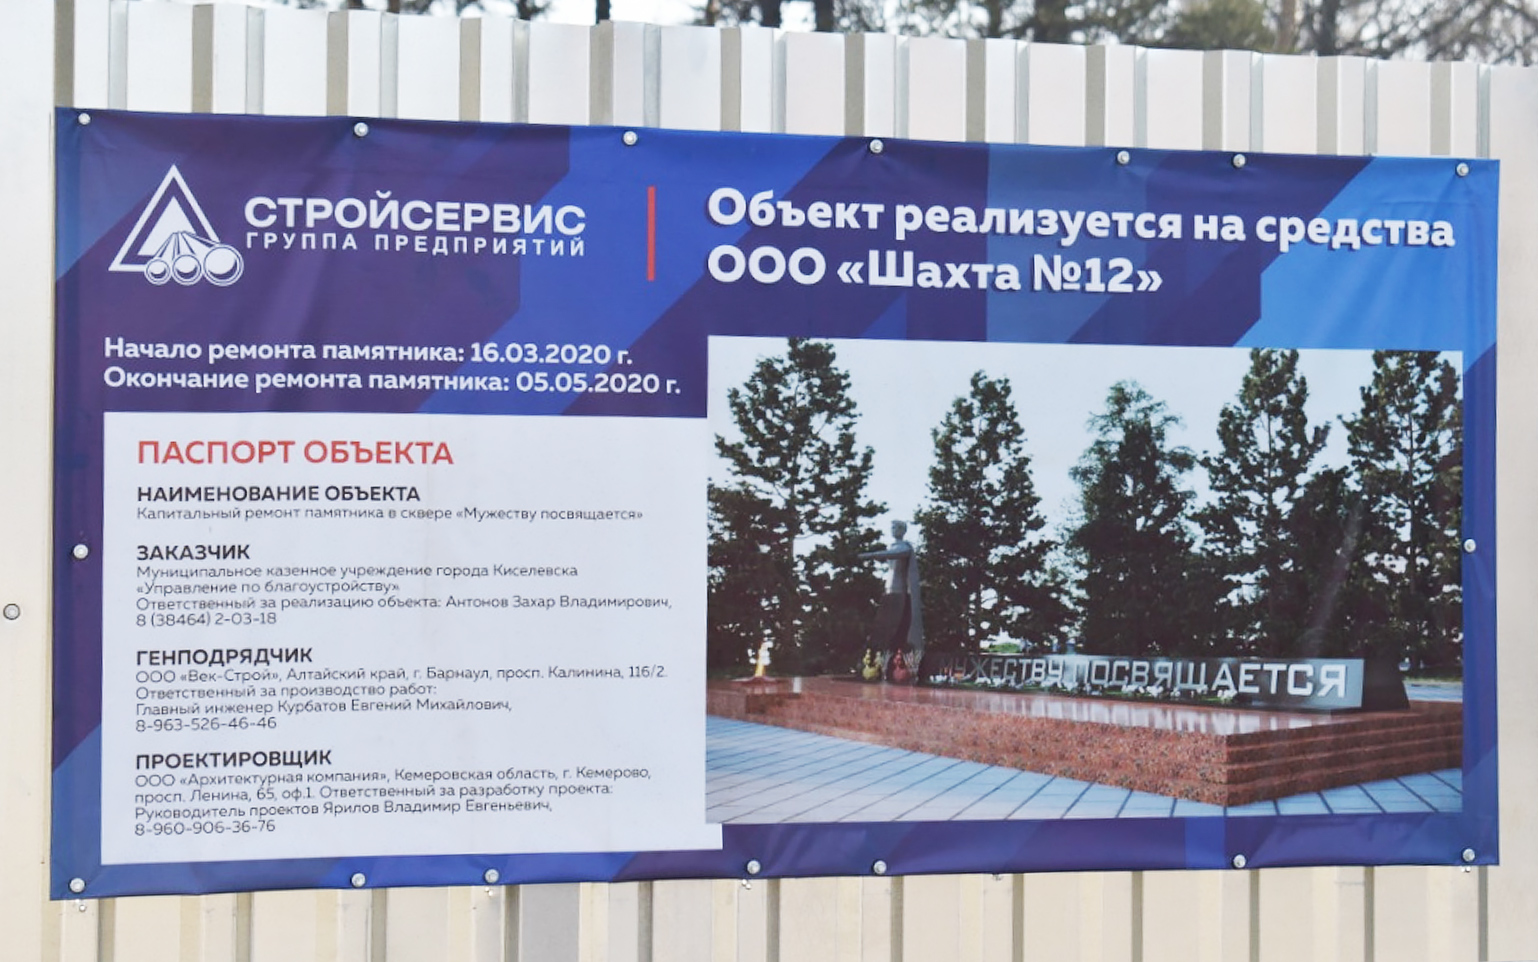 Продолжается реконструкция памятника Мужеству посвящается в Киселевске. Стройсервис